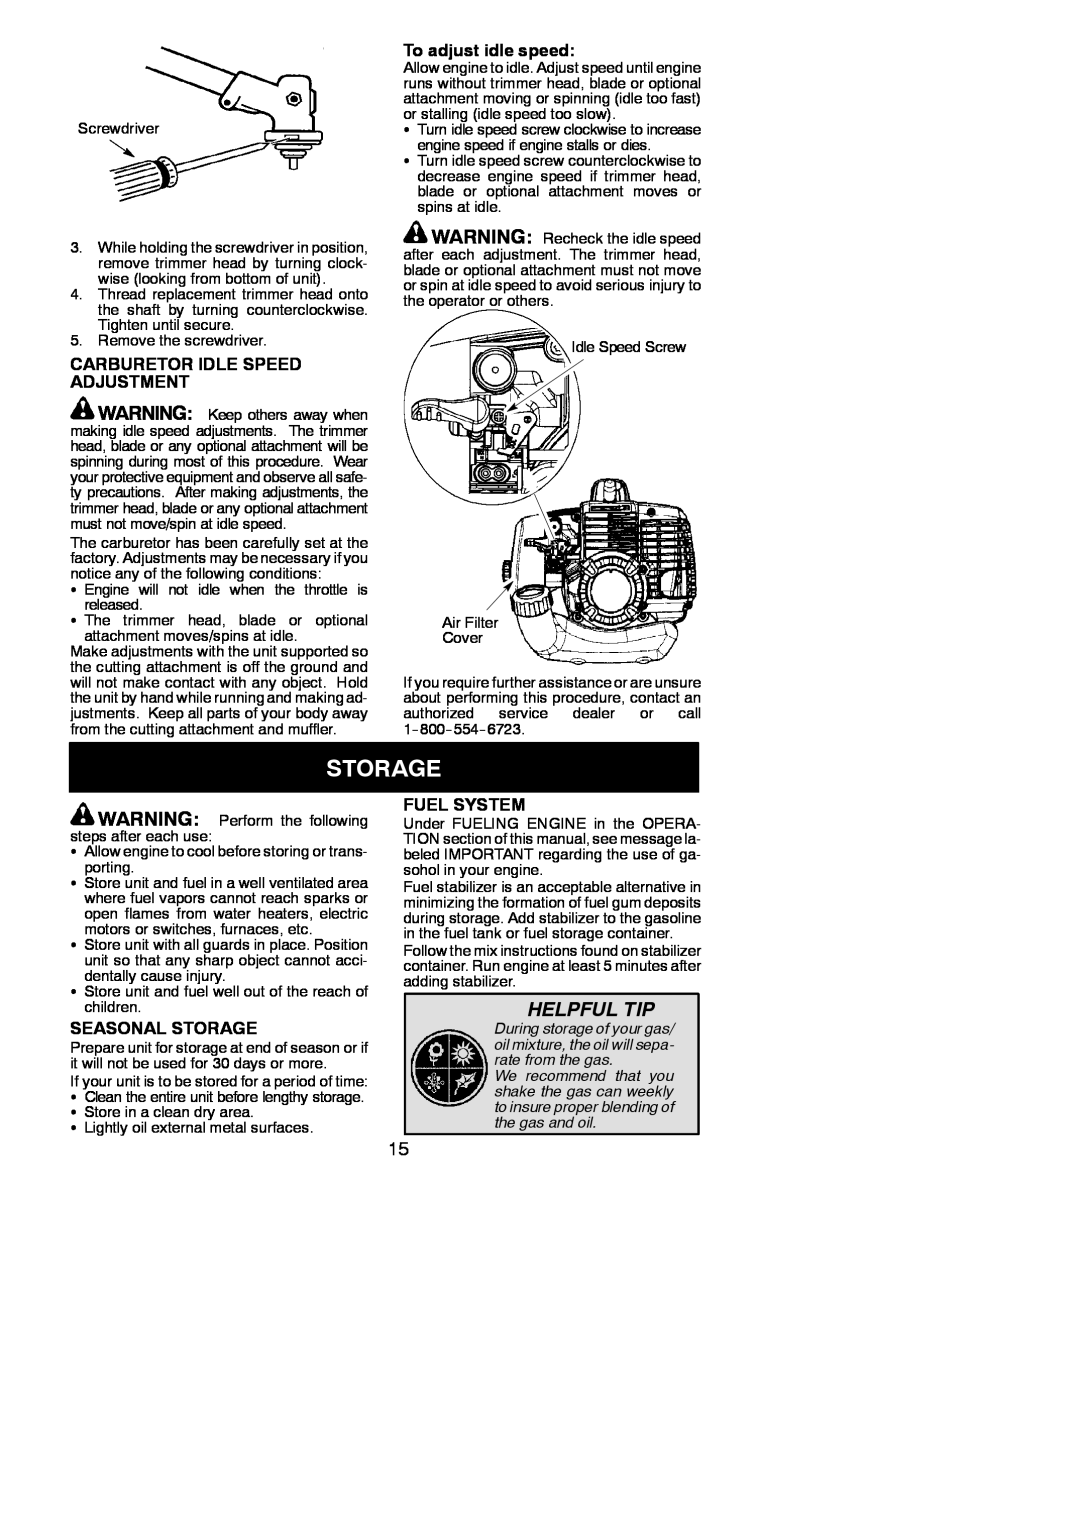 Poulan 115248826 Helpful Tip, Carburetor Idle Speed Adjustment, To adjust idle speed, Seasonal Storage, Fuel System 